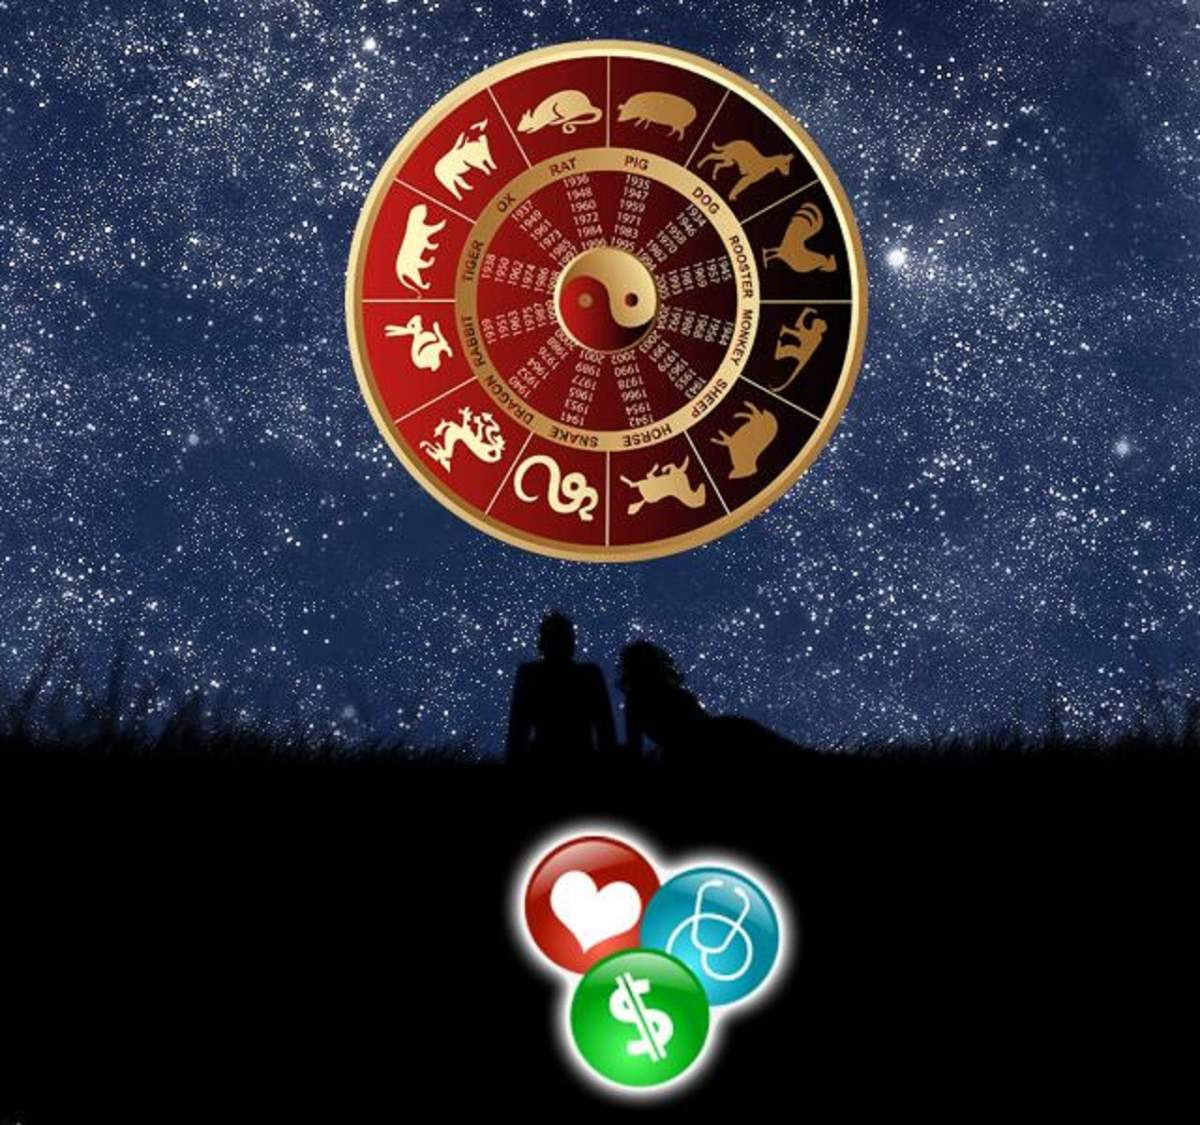 Horoscop chinezesc pentru luni, 16 decembrie 2019: Iepurii își vor face planuri serioase de viitor